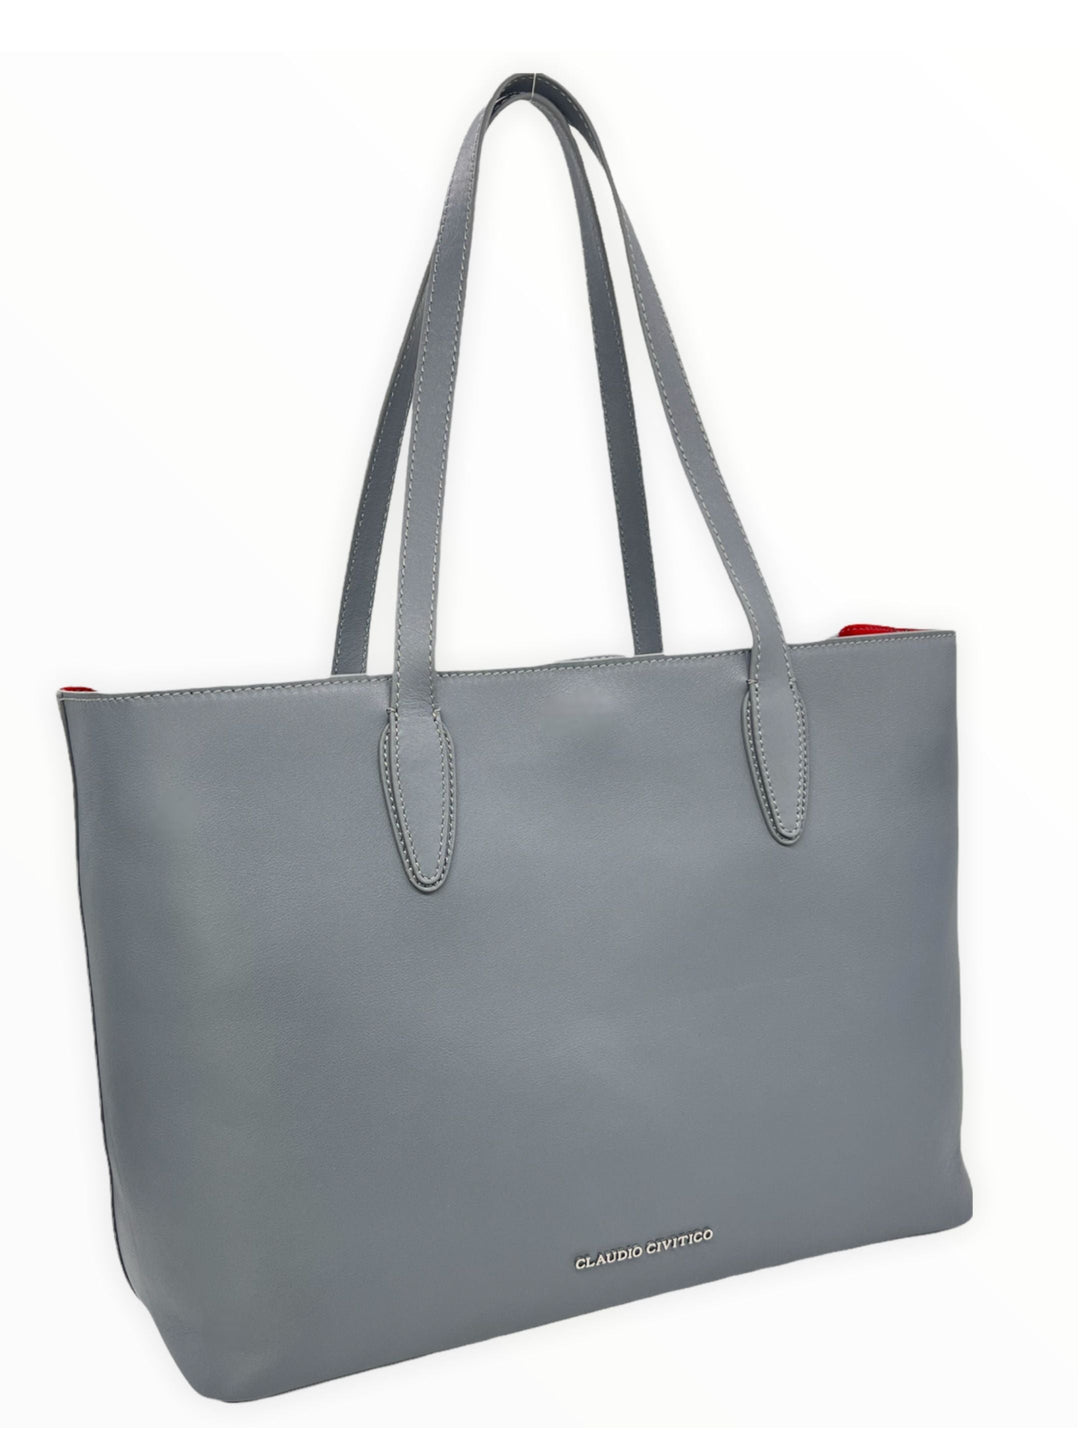 gray tote bag